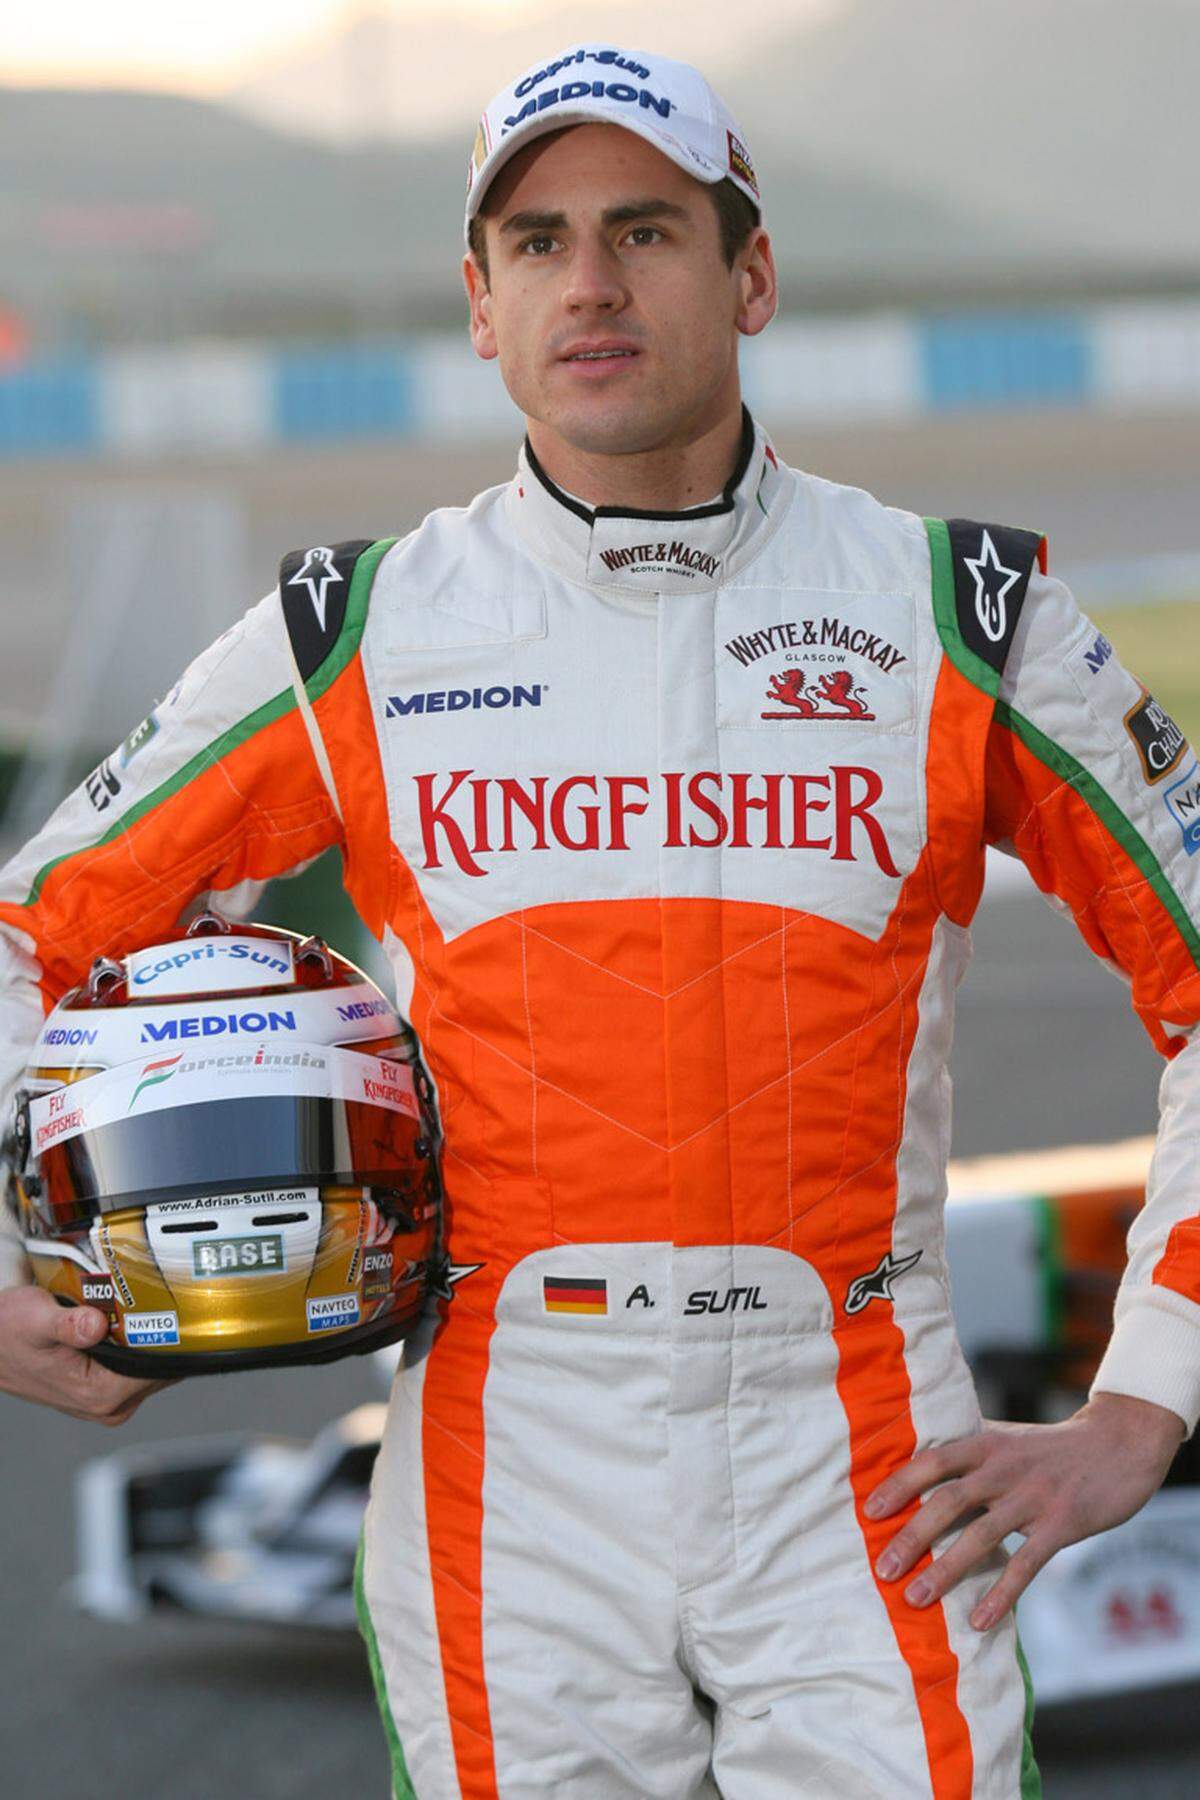 Adrian Sutil (GER)  Geboren: 11. Jänner 1983 in Starnberg  Erster Grand Prix: 18. März 2007 Australien  GP-Starts: 71  GP-Siege: 0  Bisherige Teams: Spyker (2007)  Größter Erfolg: Platz vier 2009 in Italien